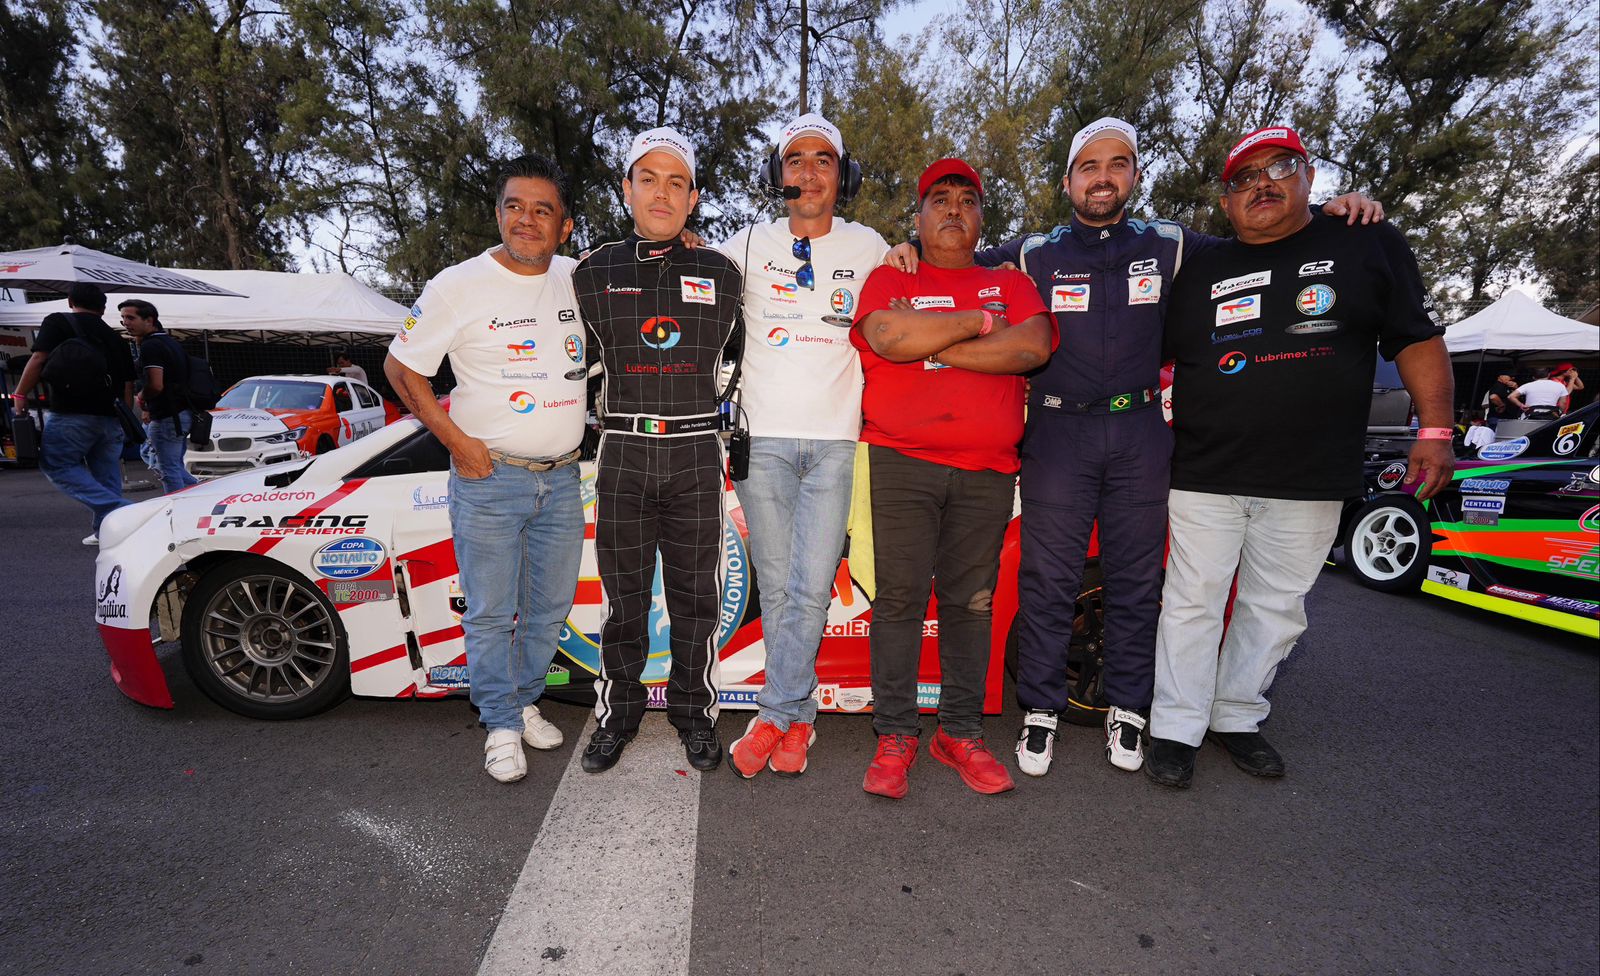 Racing Experience Brilla en el Speed Fest del Autódromo Hermanos Rodríguez